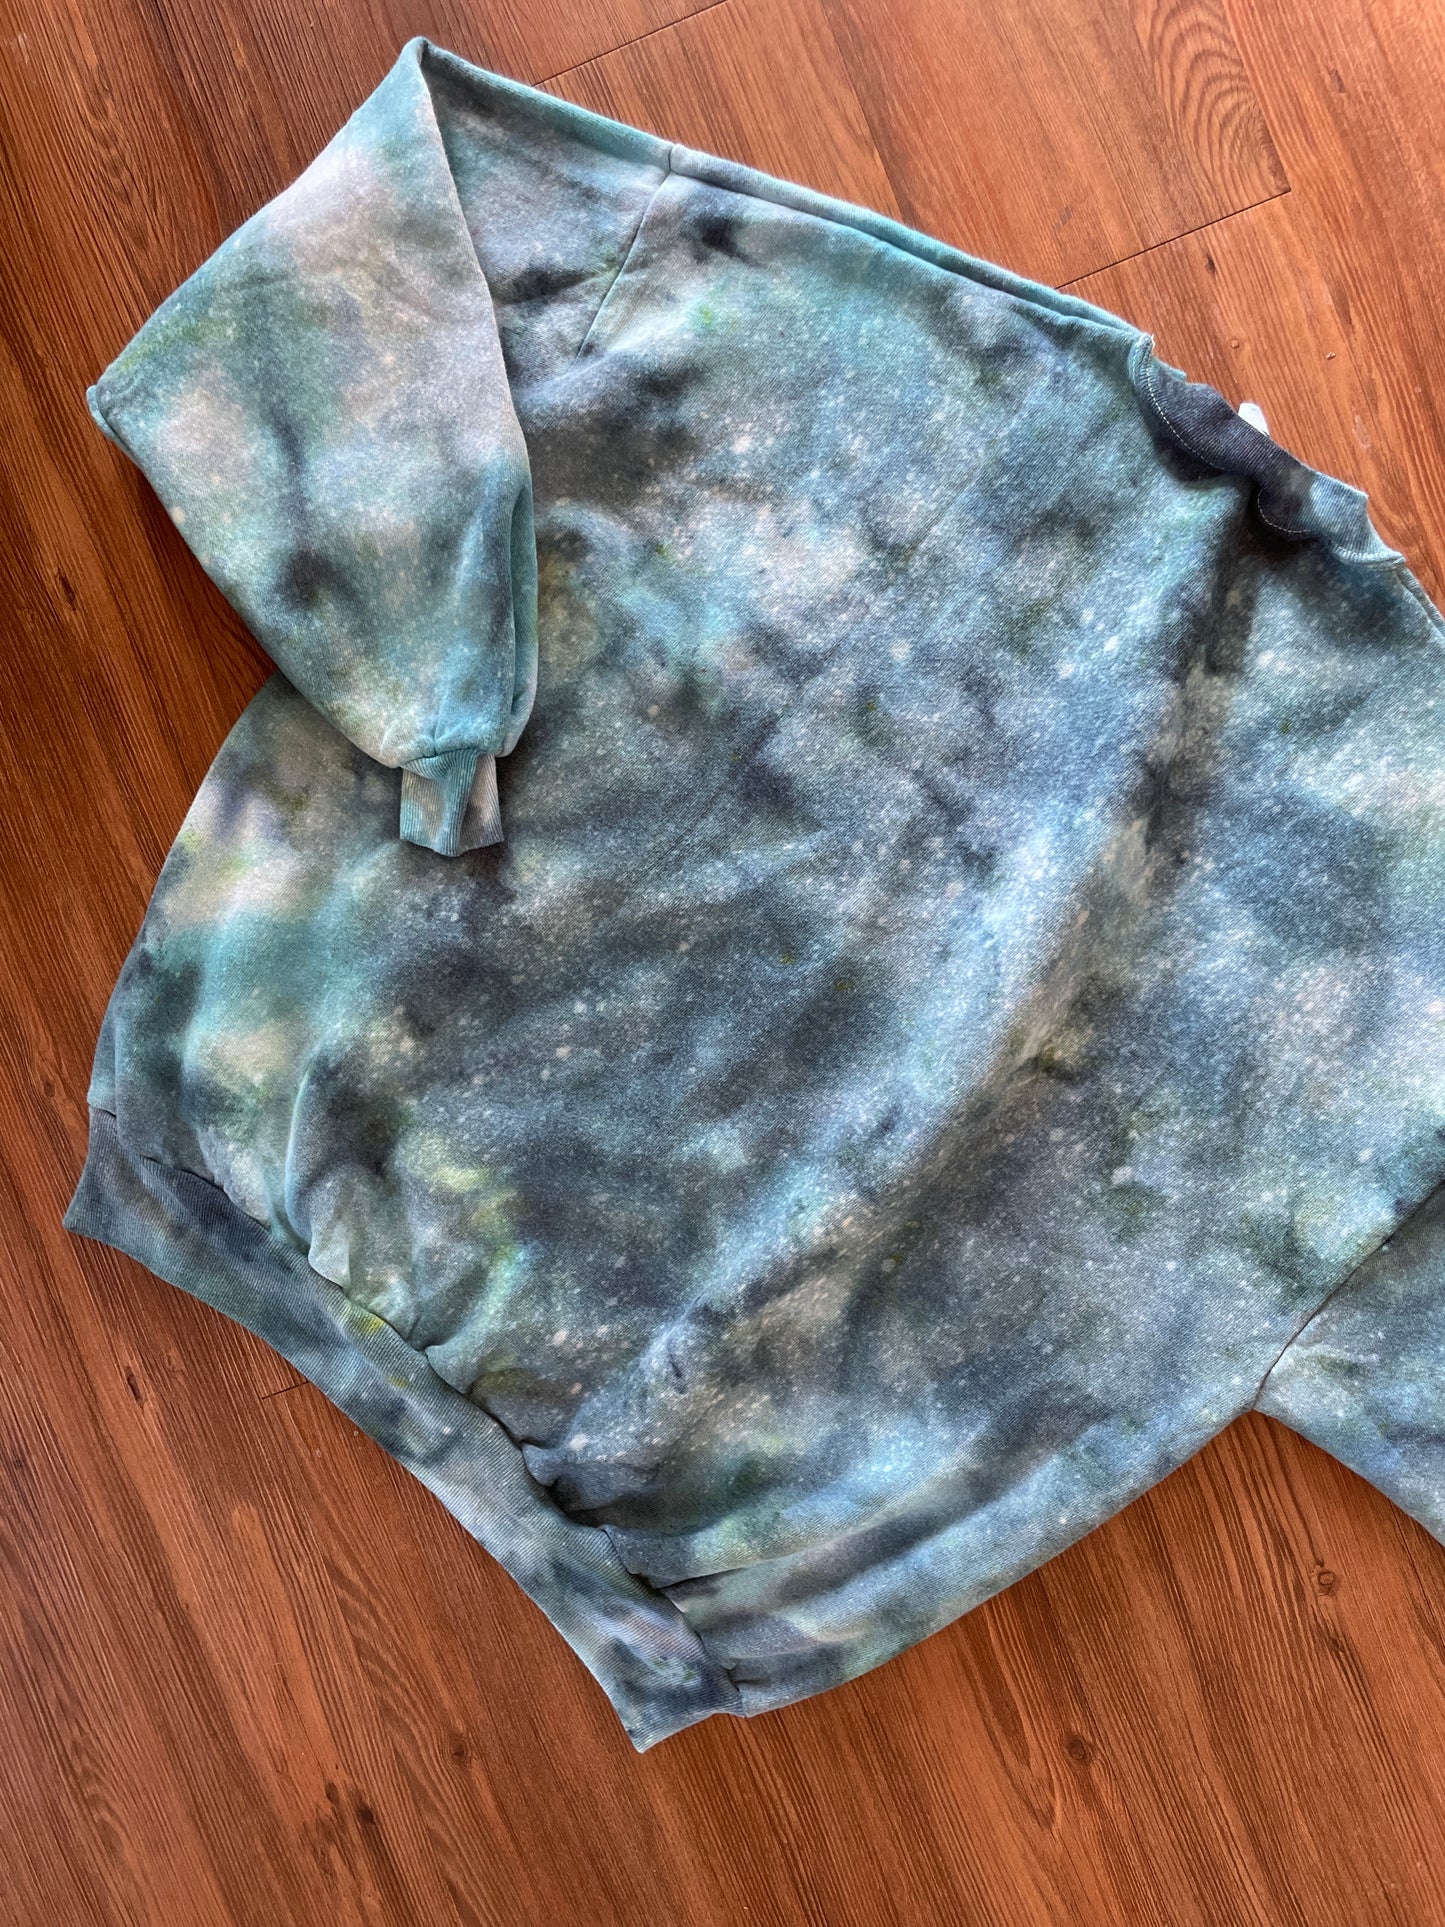 XXL Men’s Jerzee's Handmade Tie Dye Crewneck Sweatshirt | Blue and White Ice Dye Tie Dye Long Sleeve